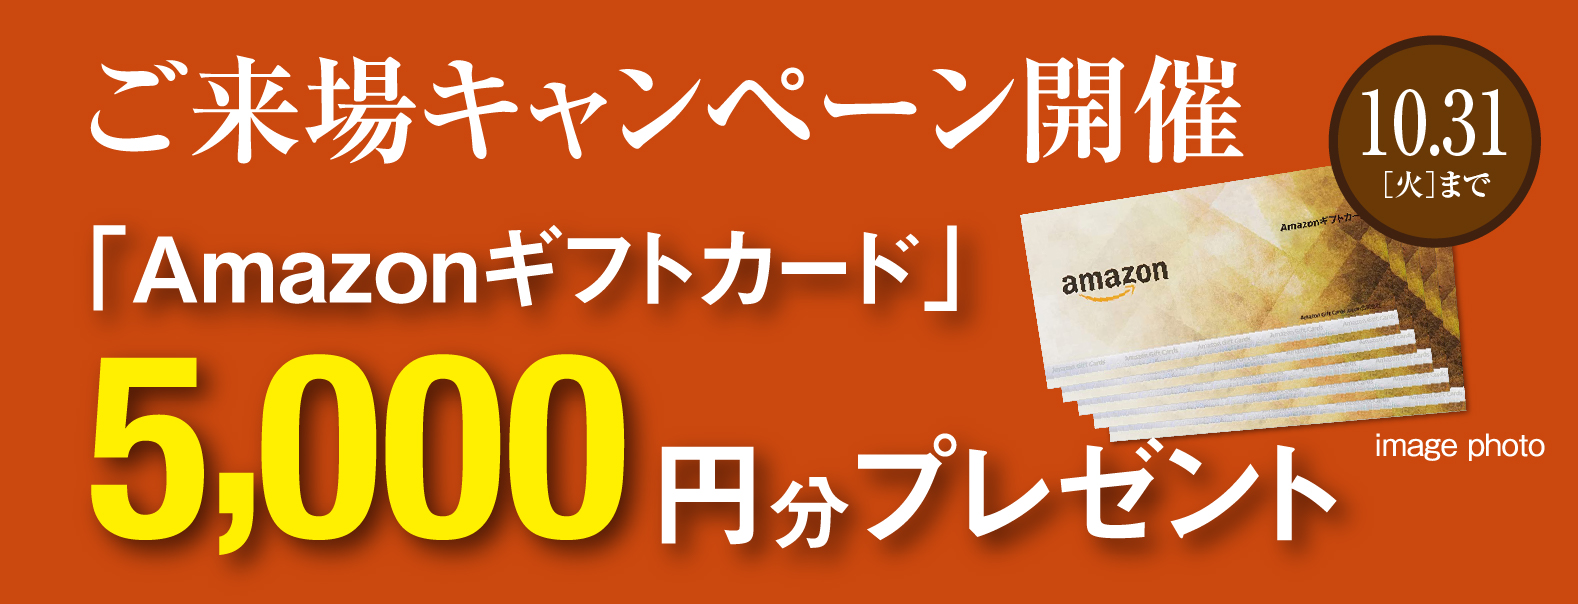 Amazonギフト券1,000円分をプレゼント！